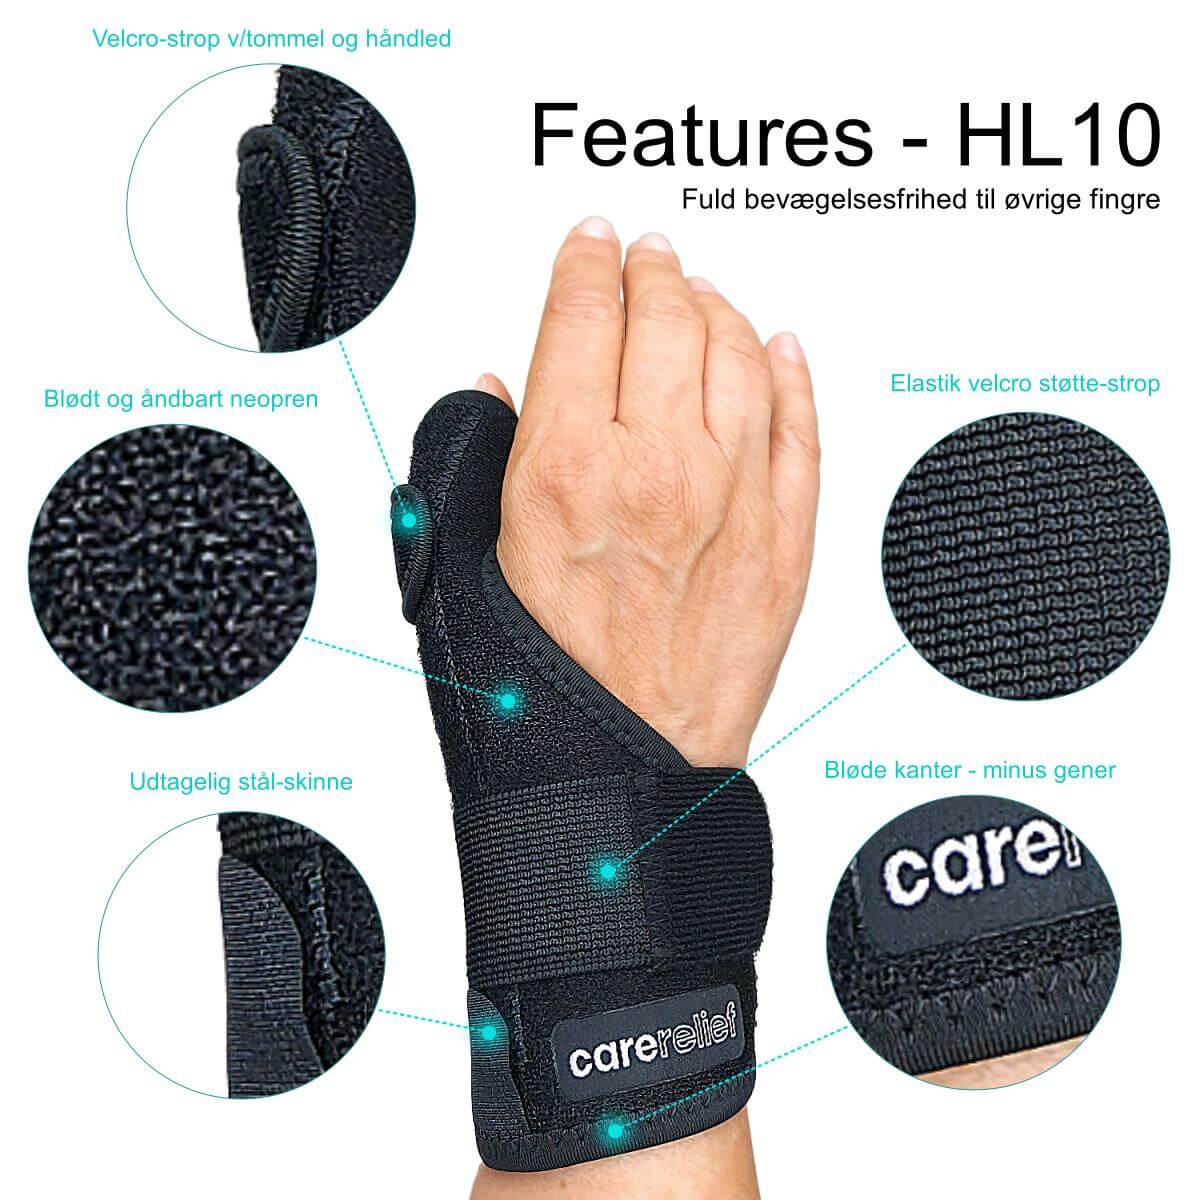 Få støtte til tommel og håndled ved smerter og skader. Køb kvalitets tommelfinger skinne og håndledsstøtte, one-size, sort - se features for tommelbandage HL10 - et støttebind fra Carerelief.